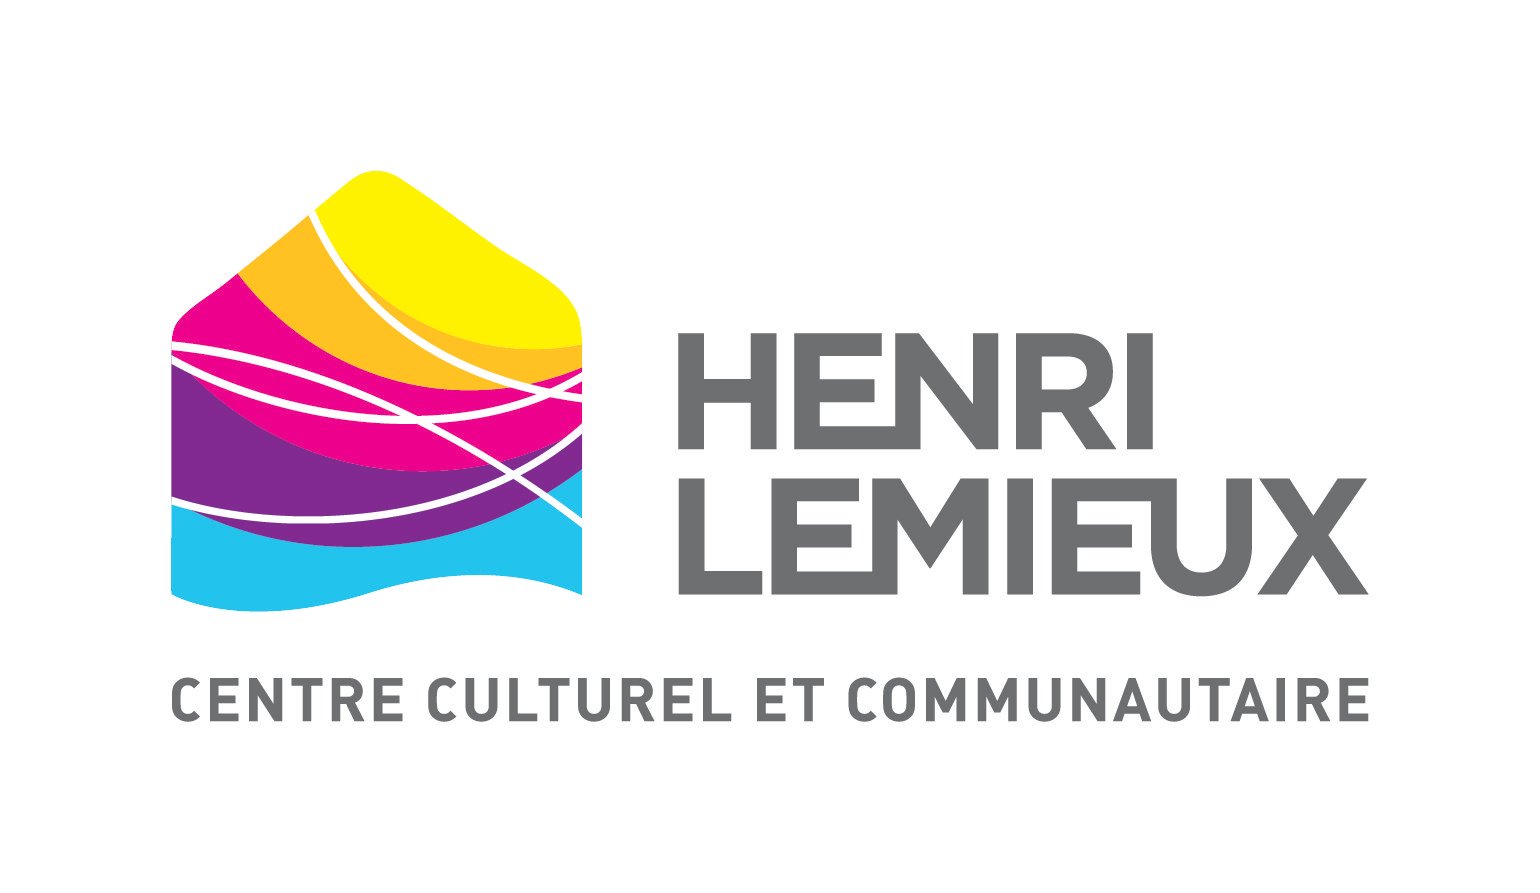 Centre culturel et communautaire Henri Lemieux